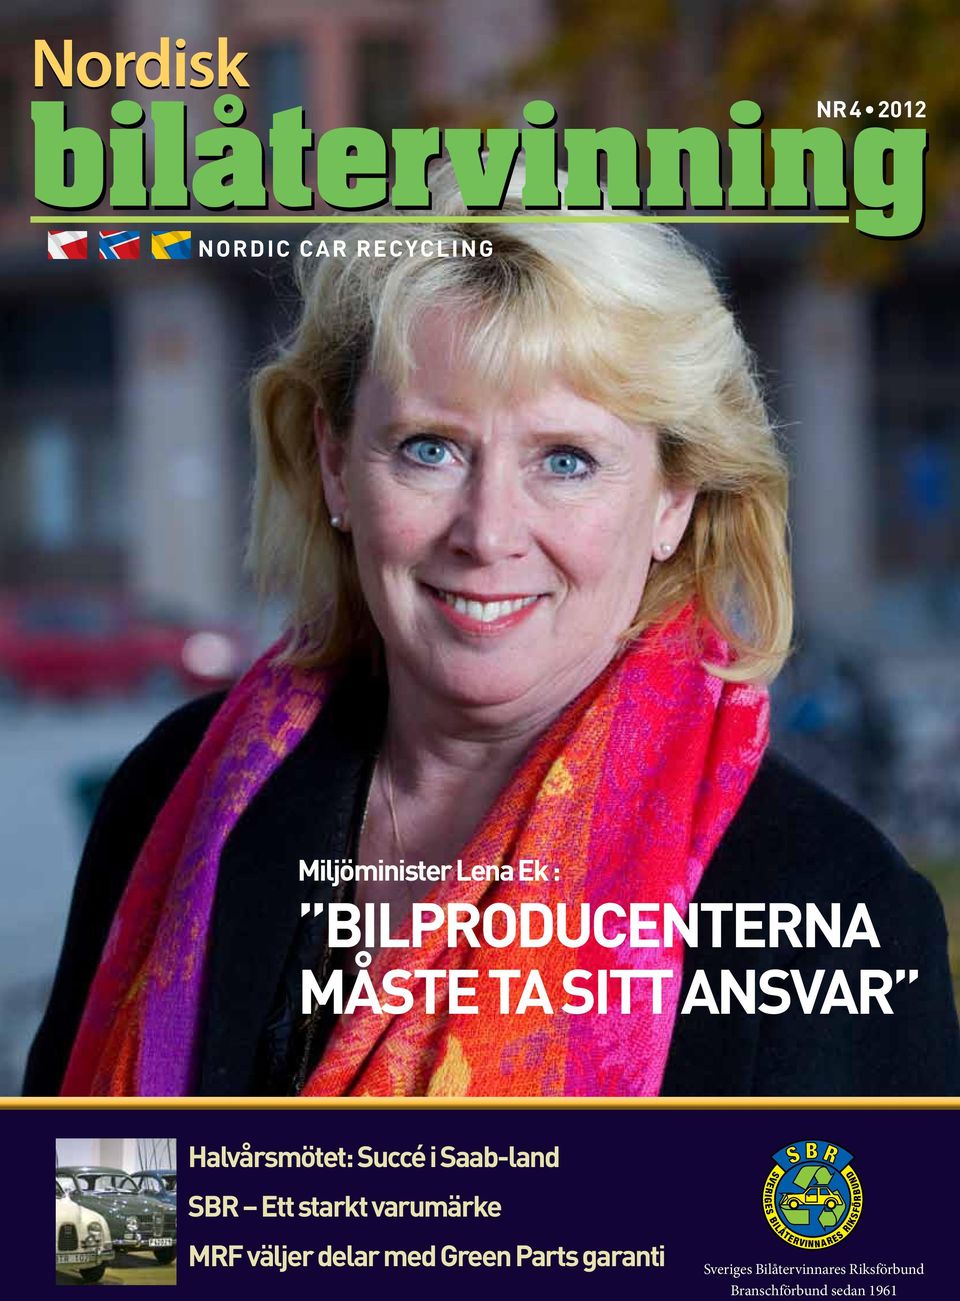 Sveriges Bilåtervinnares Riksförbund Branschförbund sedan 1961 nordisk bilåtervinning 1 2012 nbå 1 Blå=